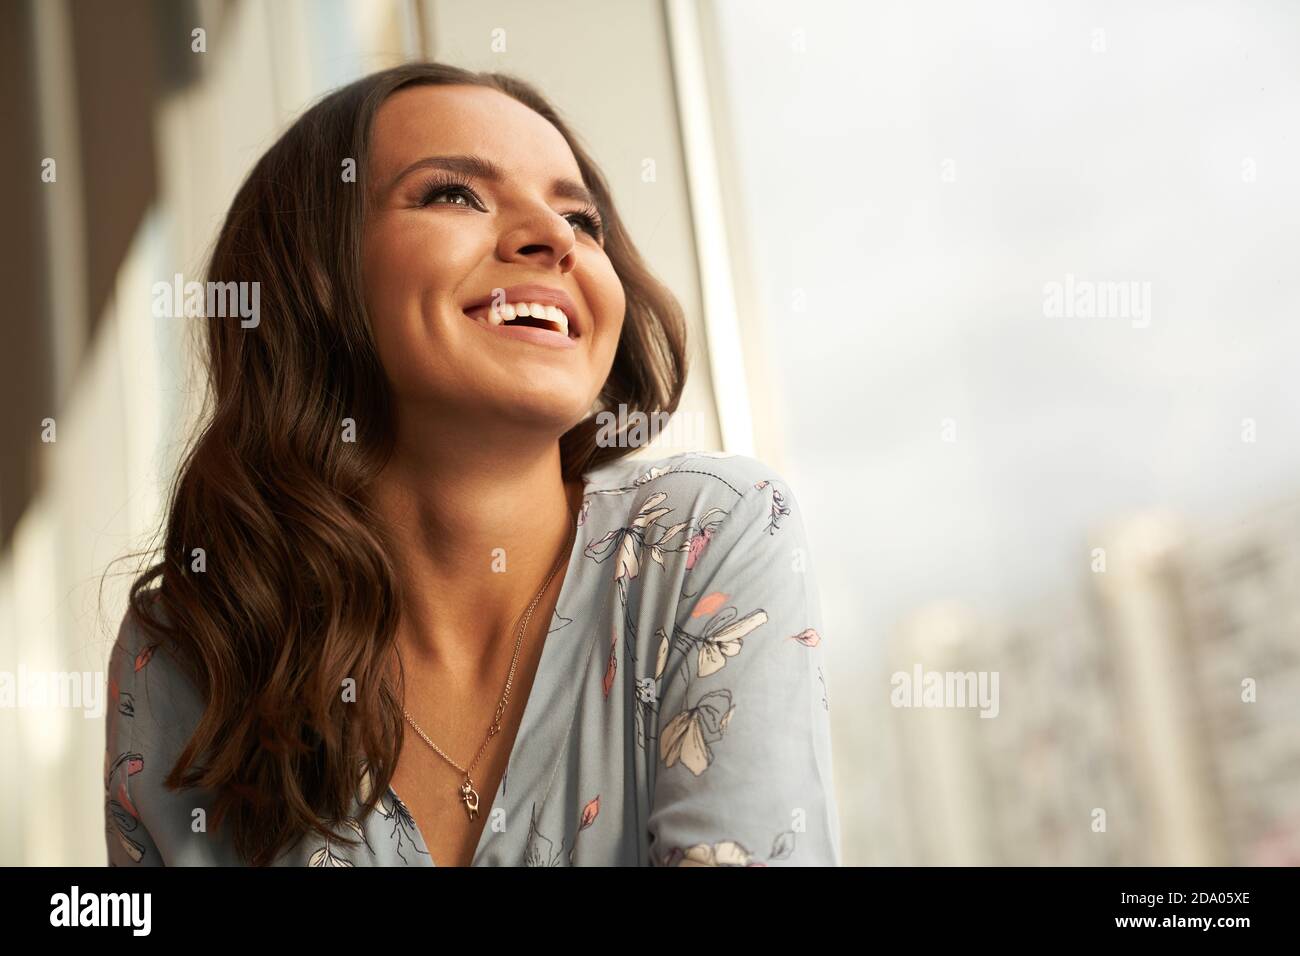 Una hermosa mujer joven feliz y sonriente mira hacia la ventana, la chica tiene la piel perfecta y una sonrisa blanca como la nieve Foto de stock